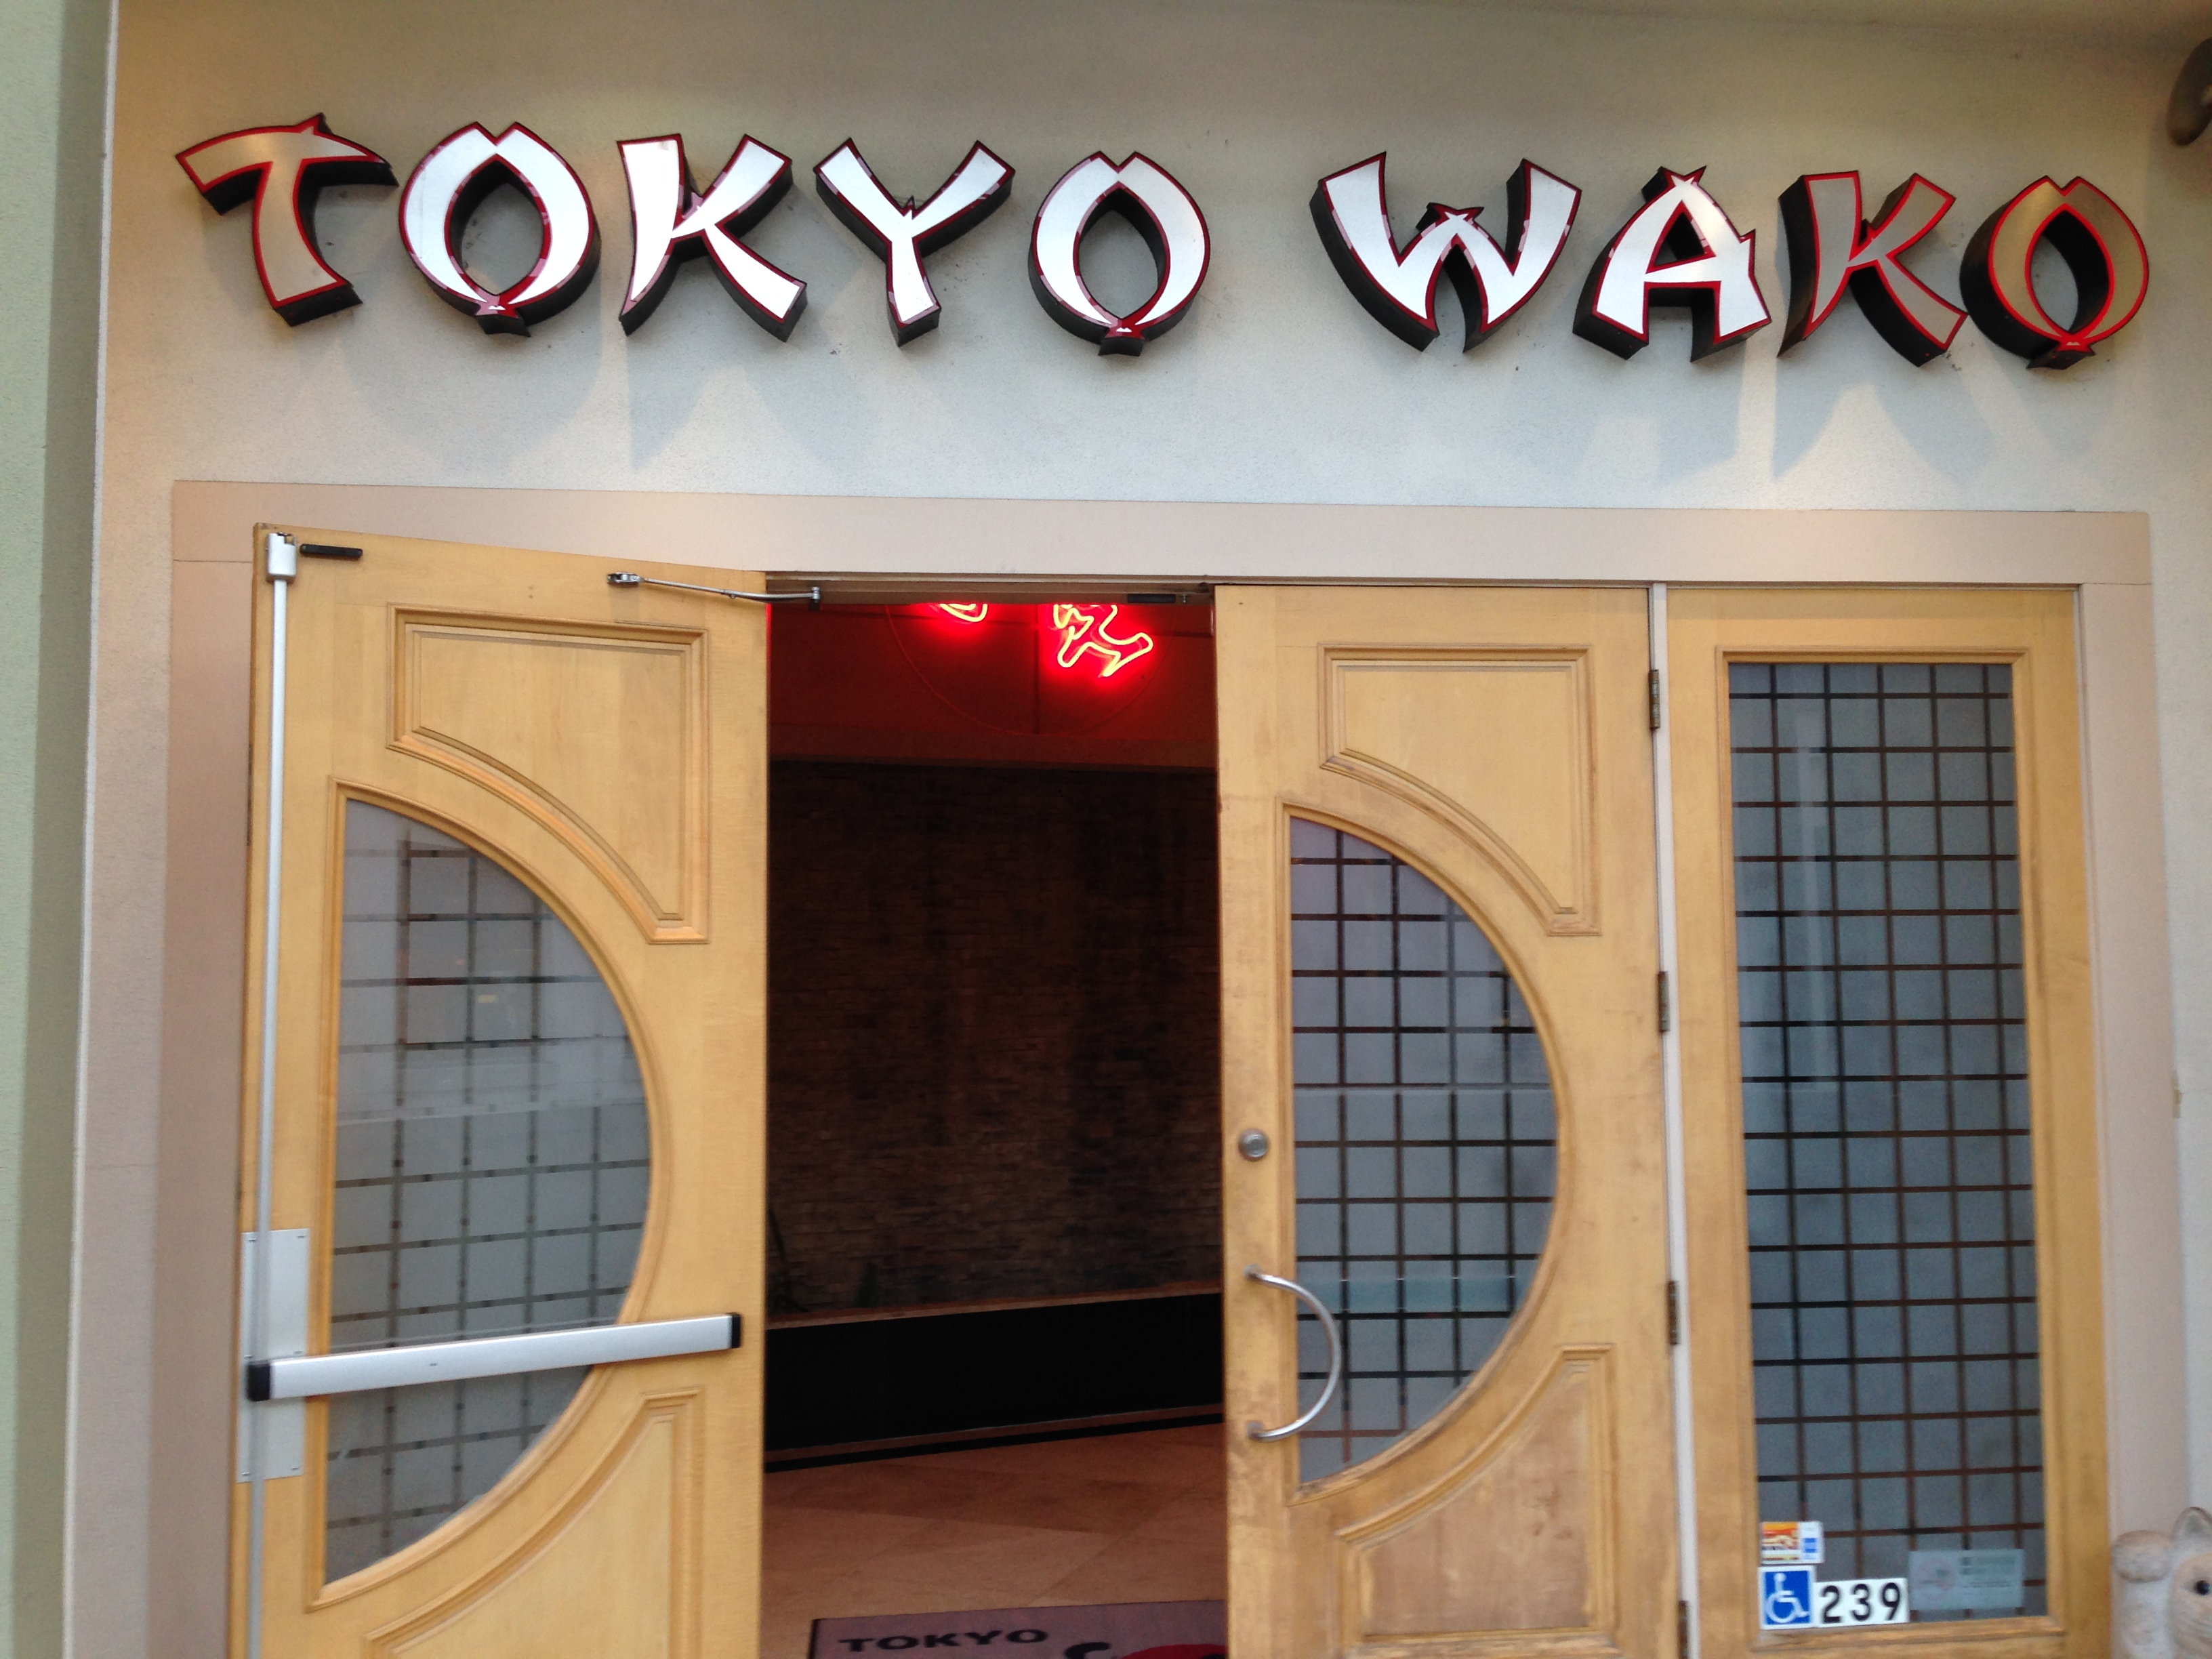 Tokyo Ward, a restaurant near the Pasadena Convention Centre.